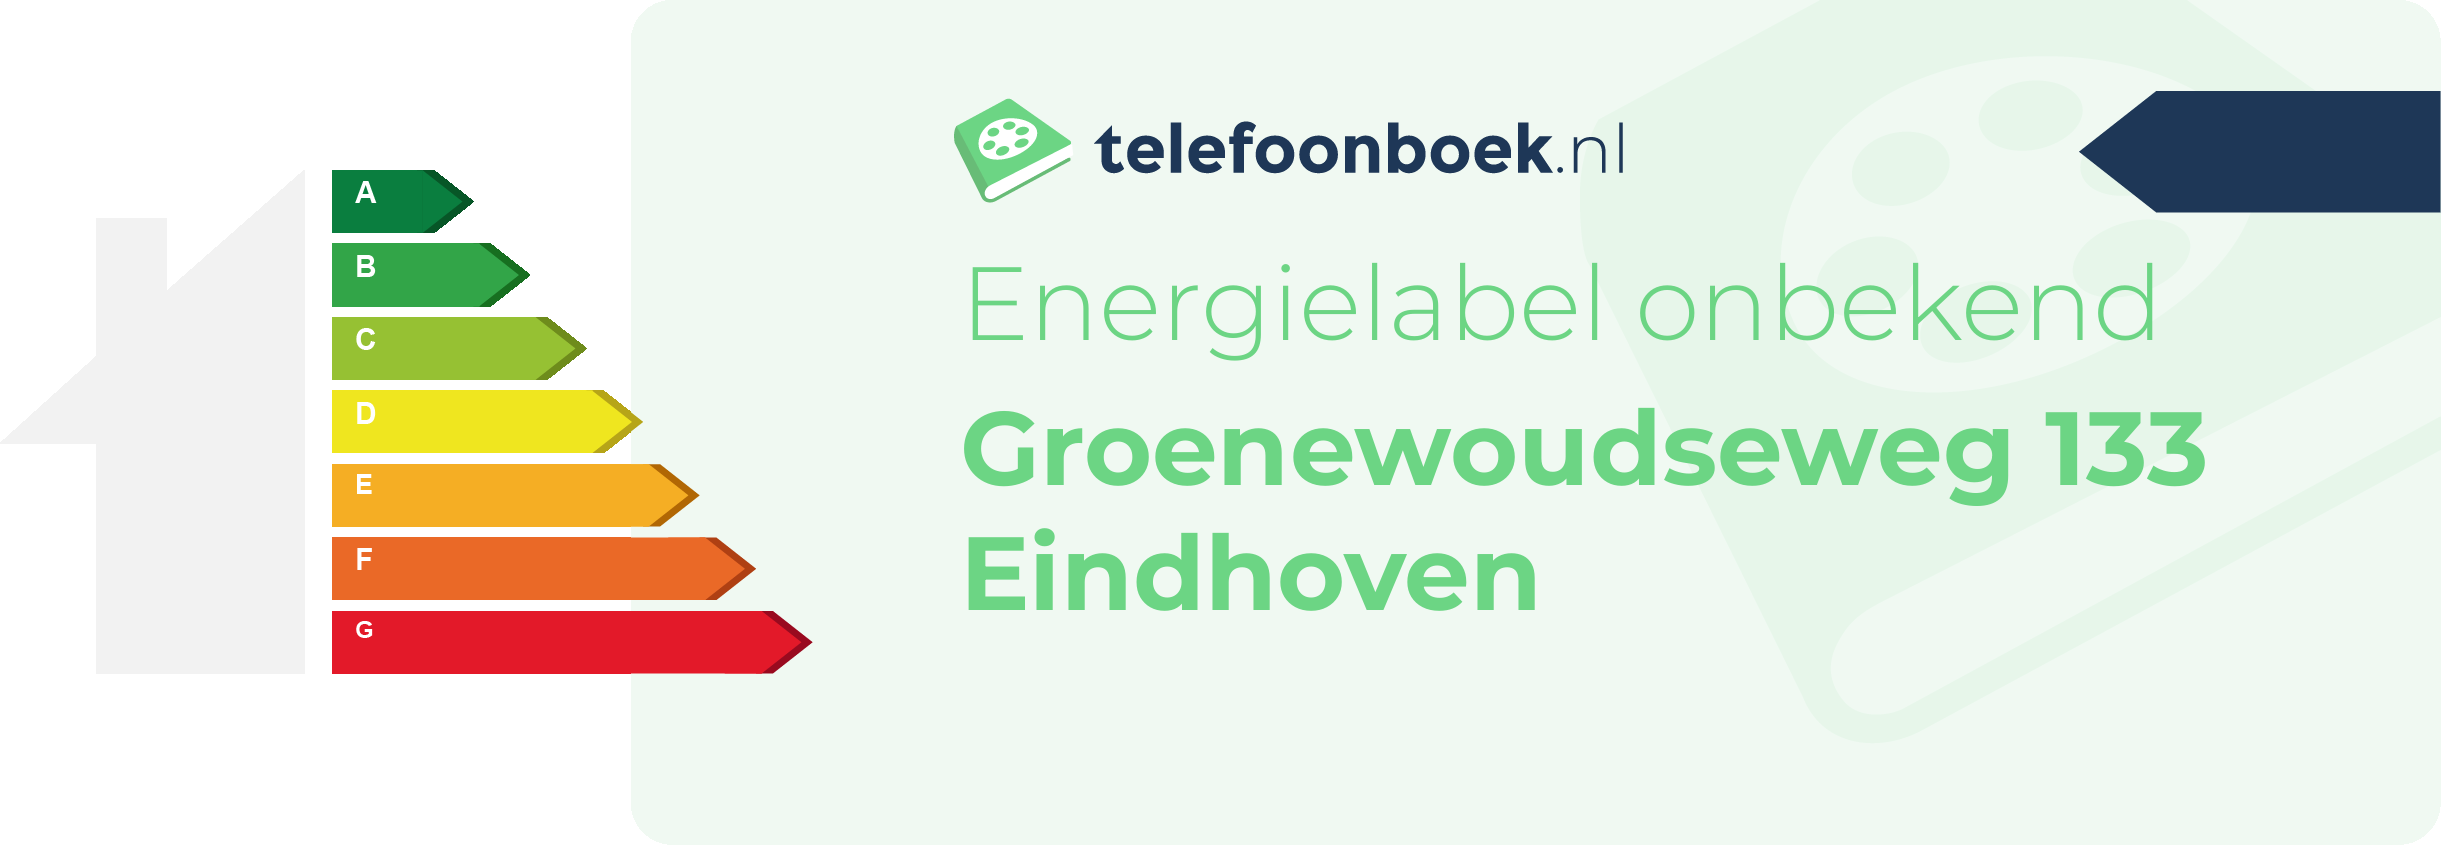 Energielabel Groenewoudseweg 133 Eindhoven